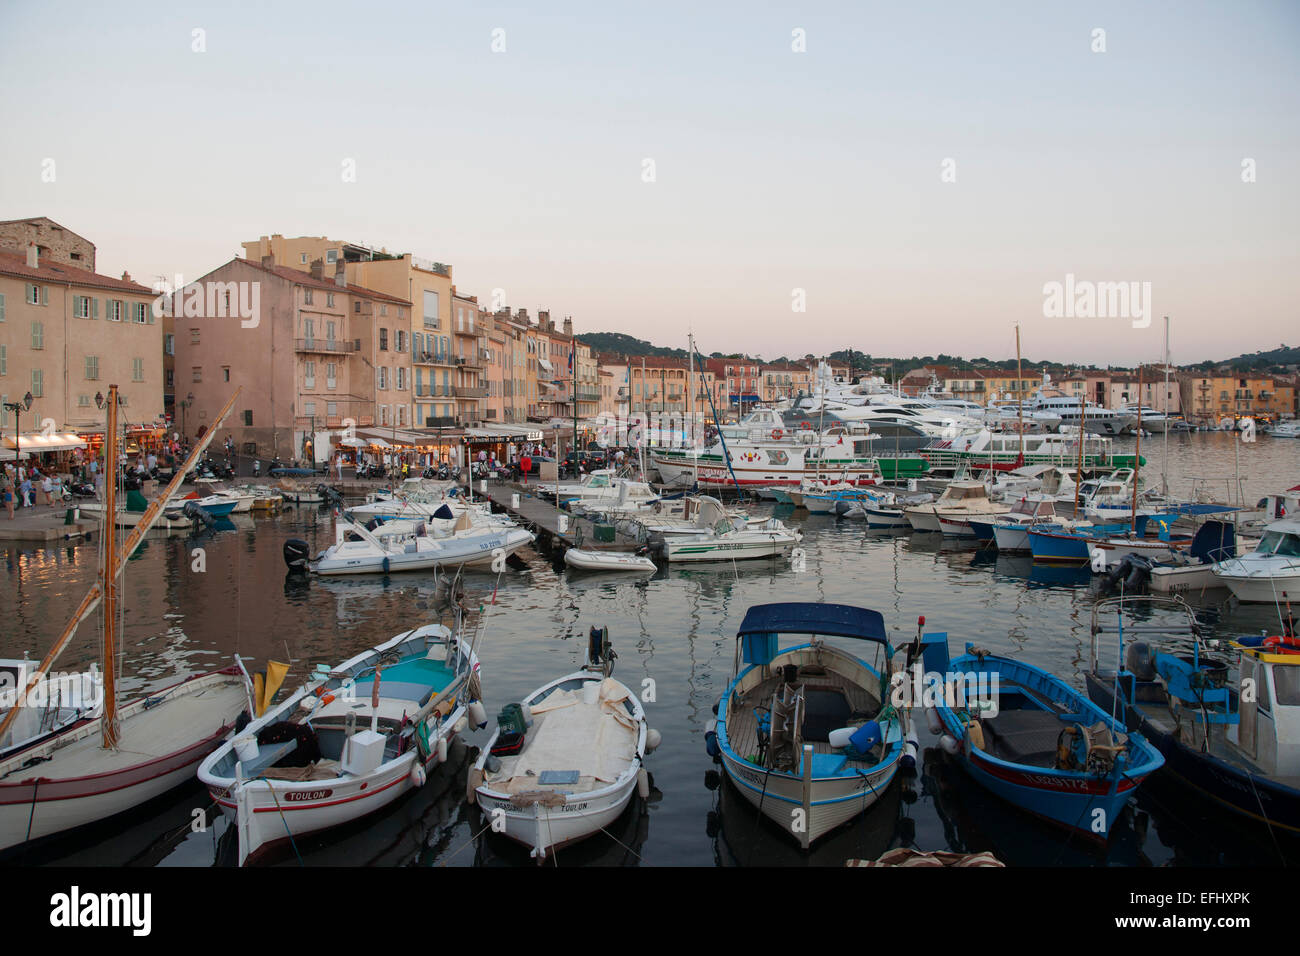 La pesca barche e yacht nel porto, Sant Tropez, Saint Tropez, Cote d azzurro, Francia, Europa Foto Stock